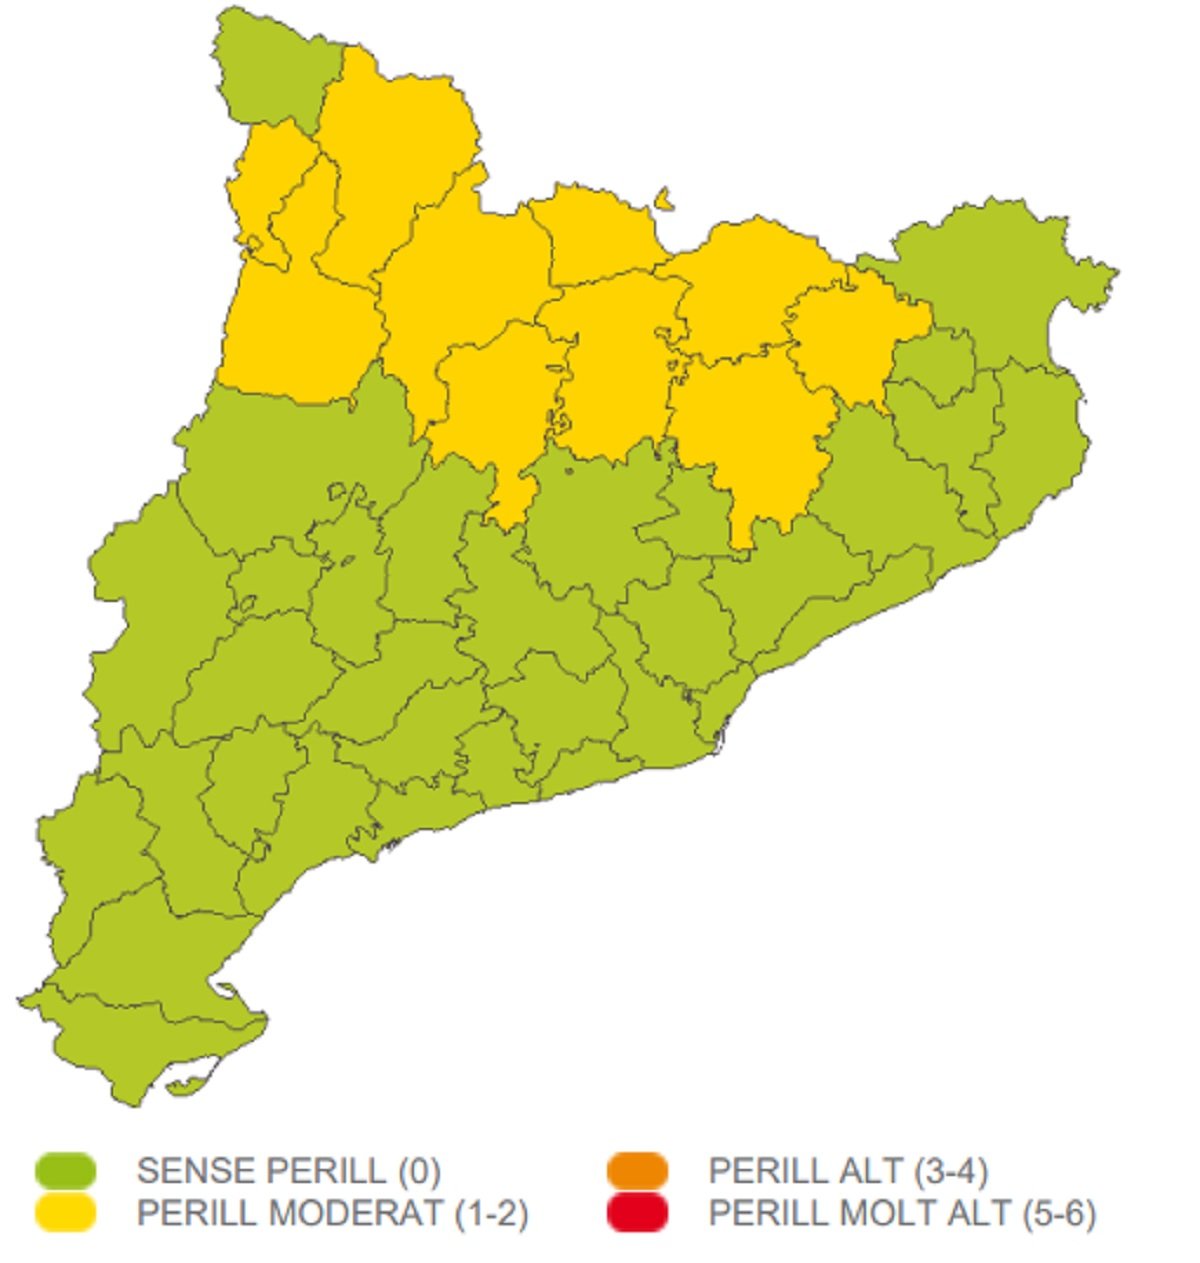 Mapa perill aiguats dimecres, 28 de juny a Catalunya Meteocat